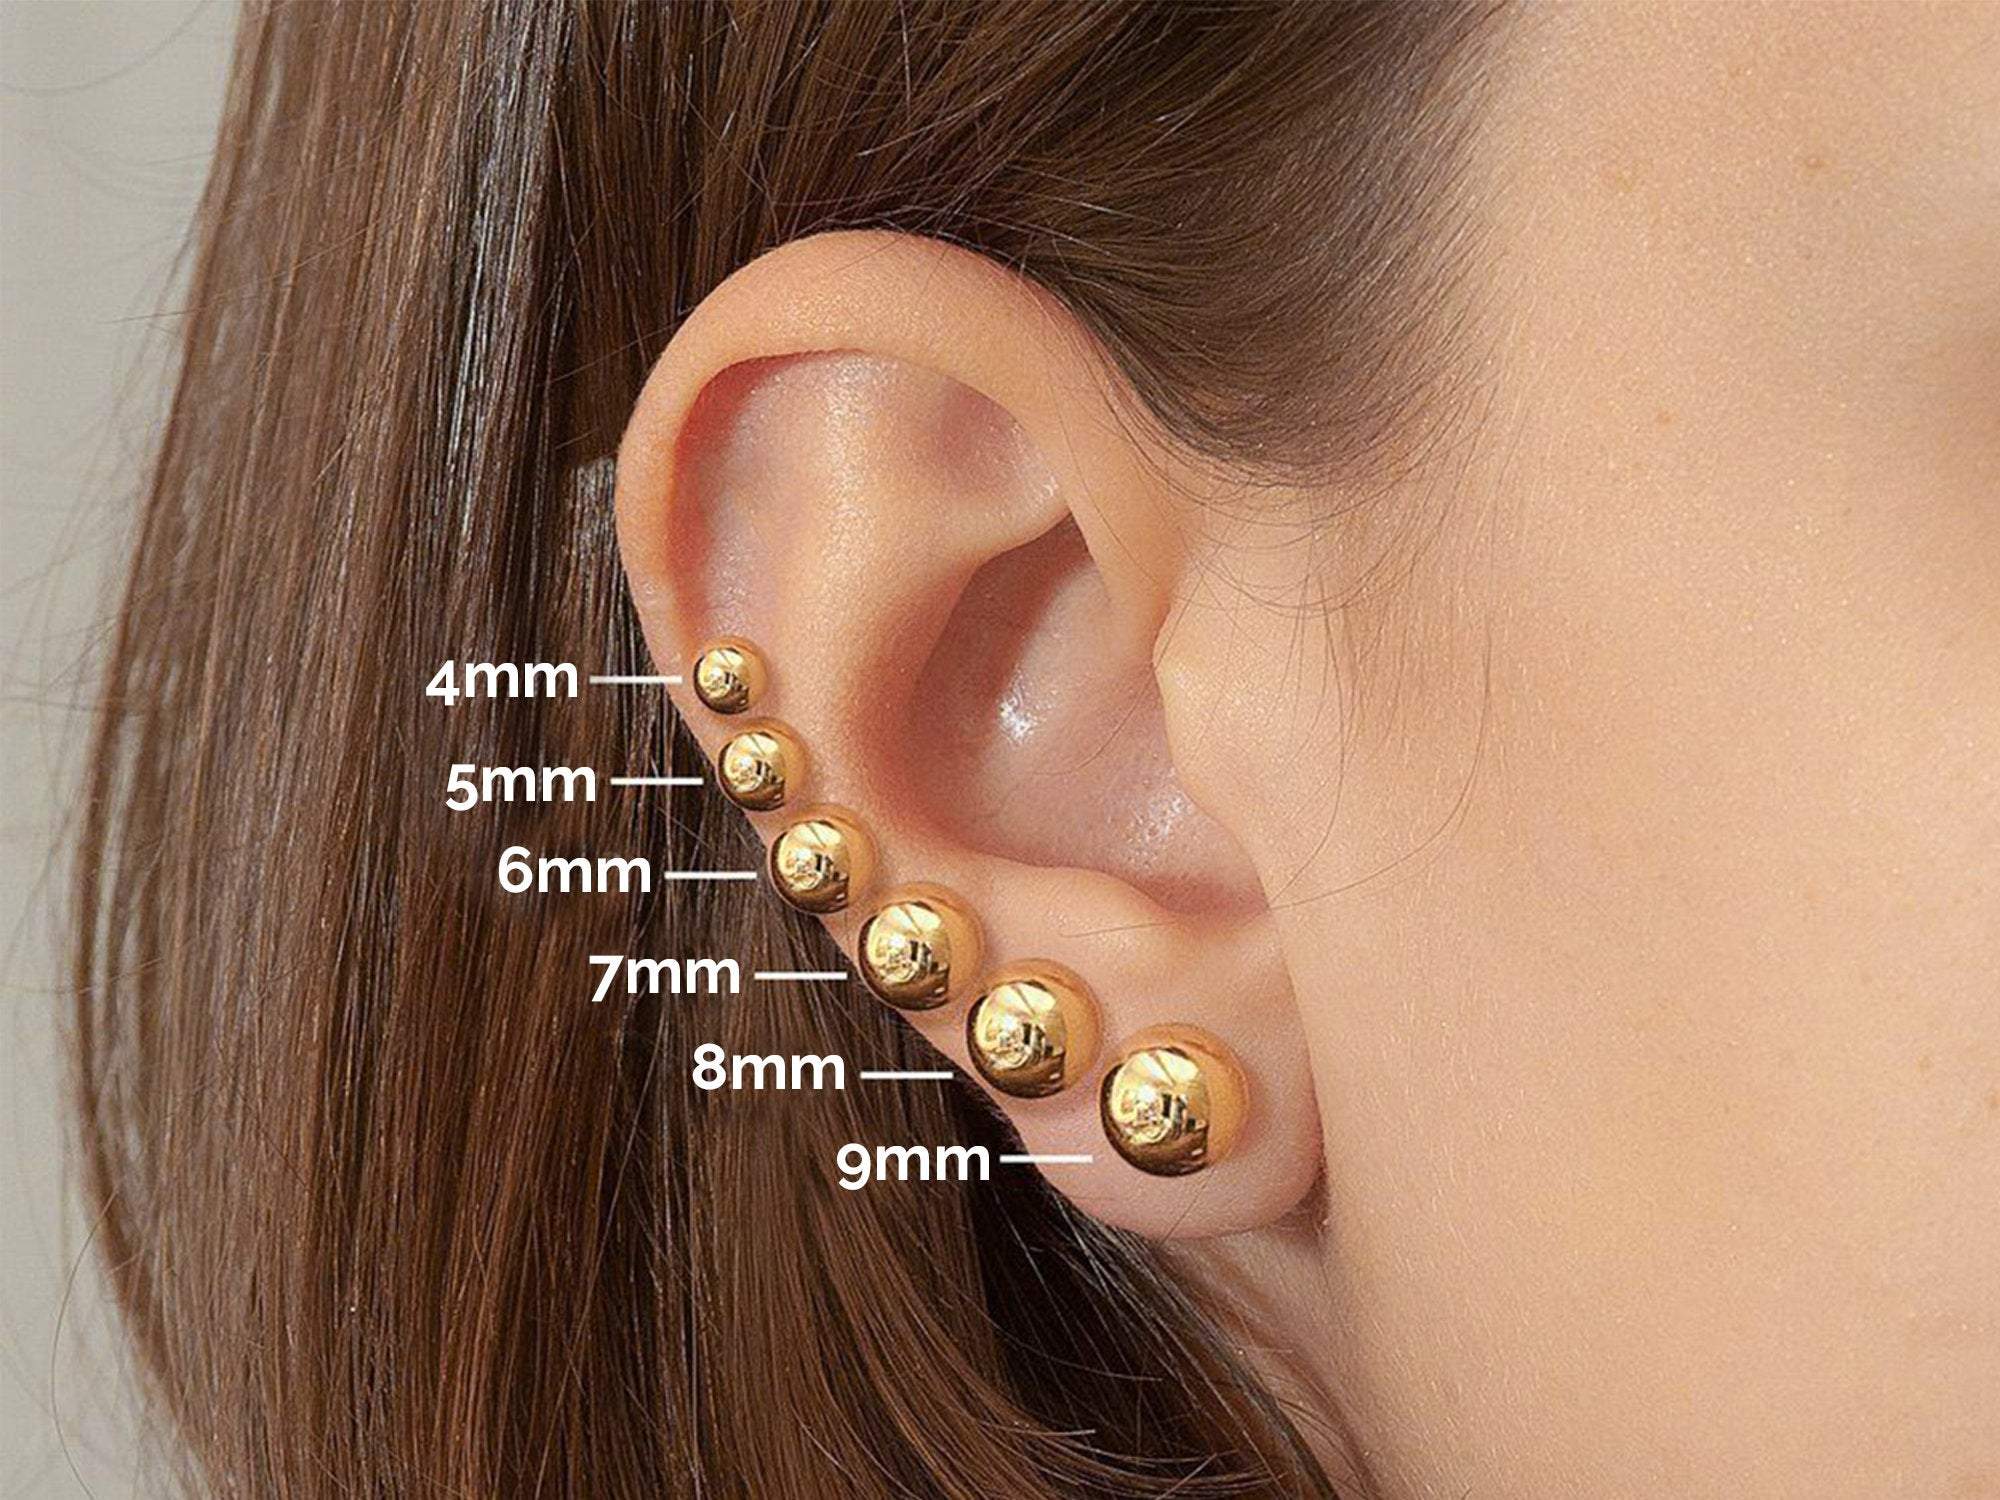 Ball Stud Earrings 3mm - 8mm in 14K Gold